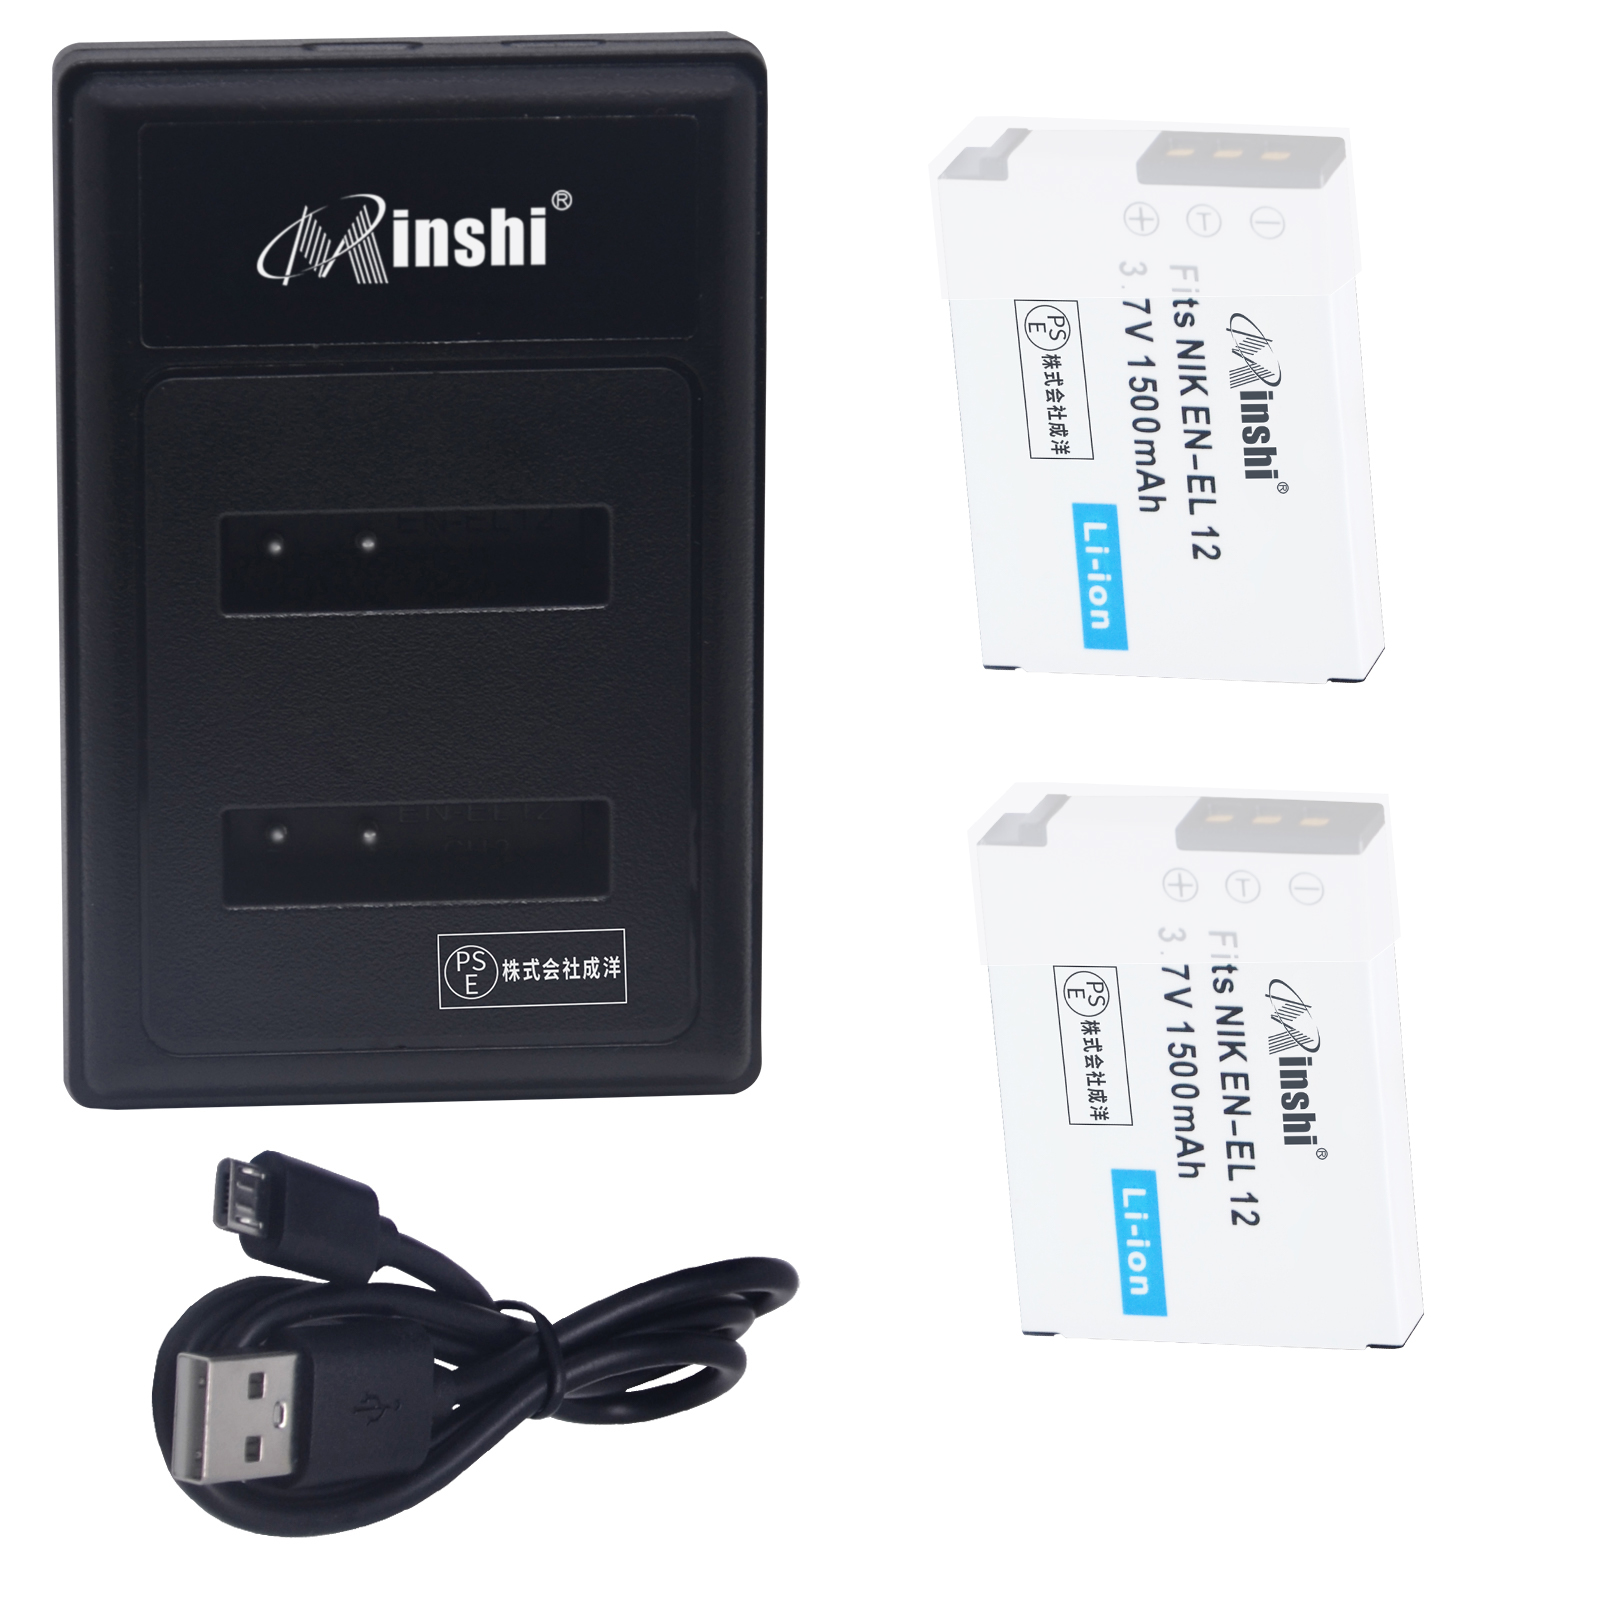 【２個】minshi NIKON COOLPIX S710 EN-EL12【1500mAh 3.7V】【互換急速USBチャージャー】 高品質交換用バッテリー